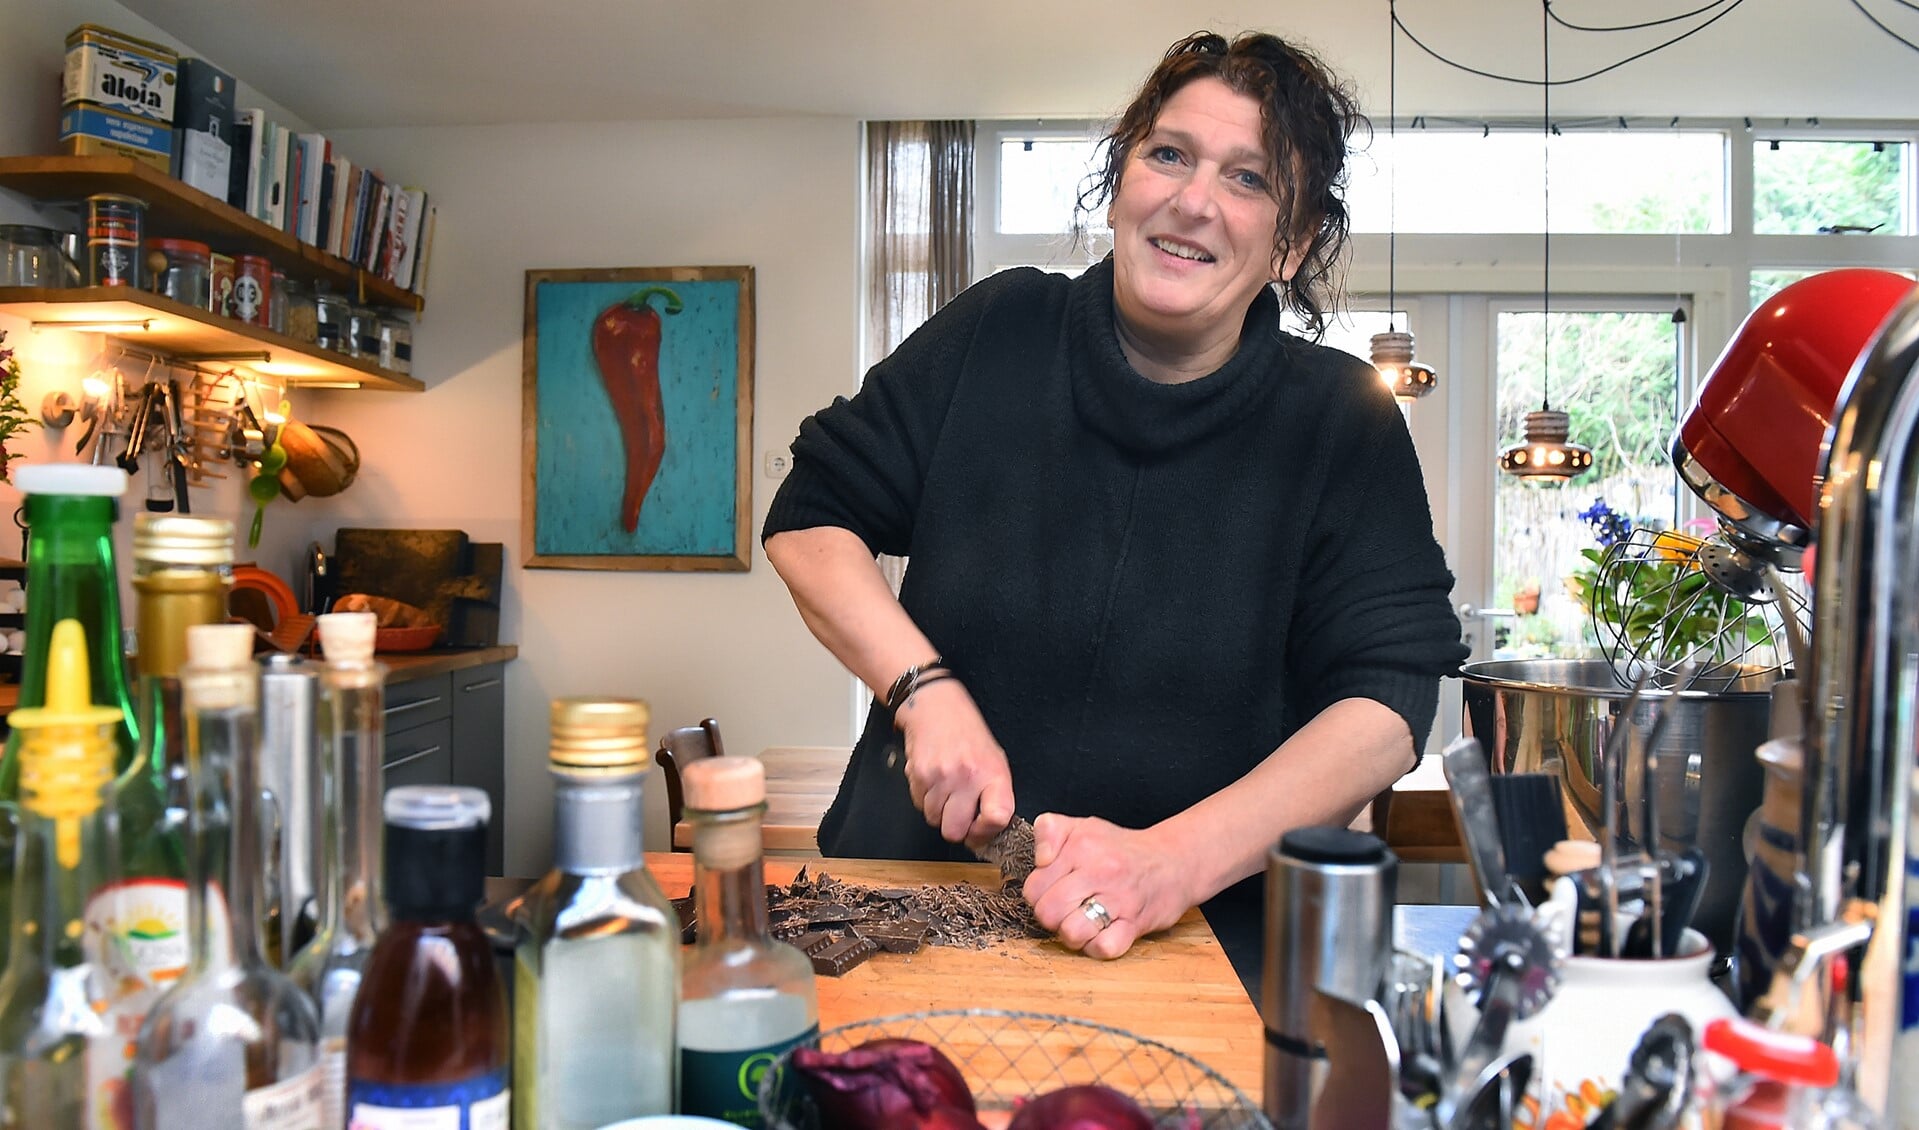 Raffaela Amato: "Mijn passie voor koken zit in mijn genen. Dat heb ik meegekregen van mijn Italiaanse familie." Foto: Roel Kleinpenning